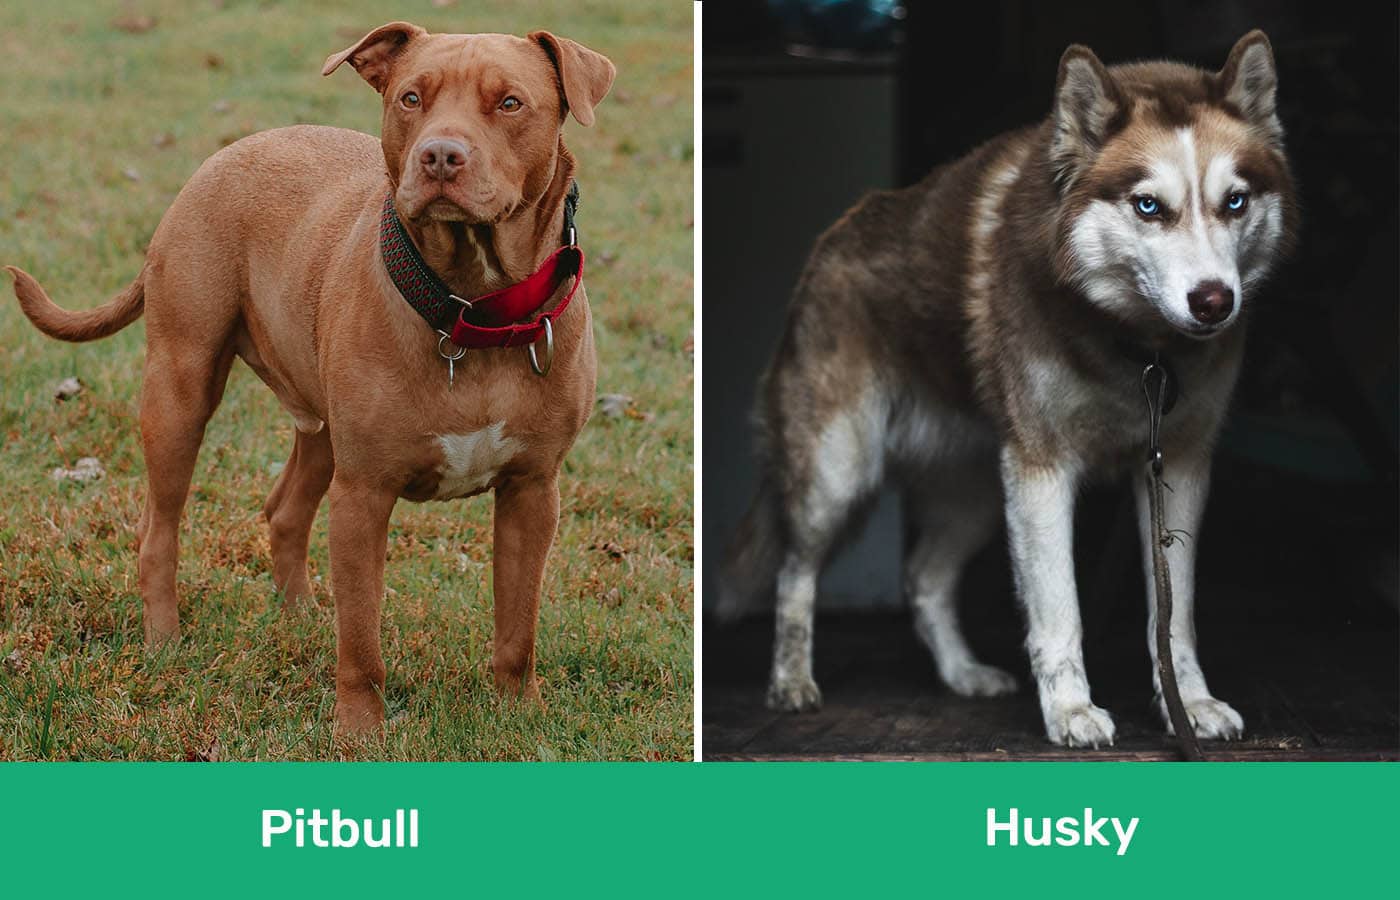 Pitbull vs Husky side by side